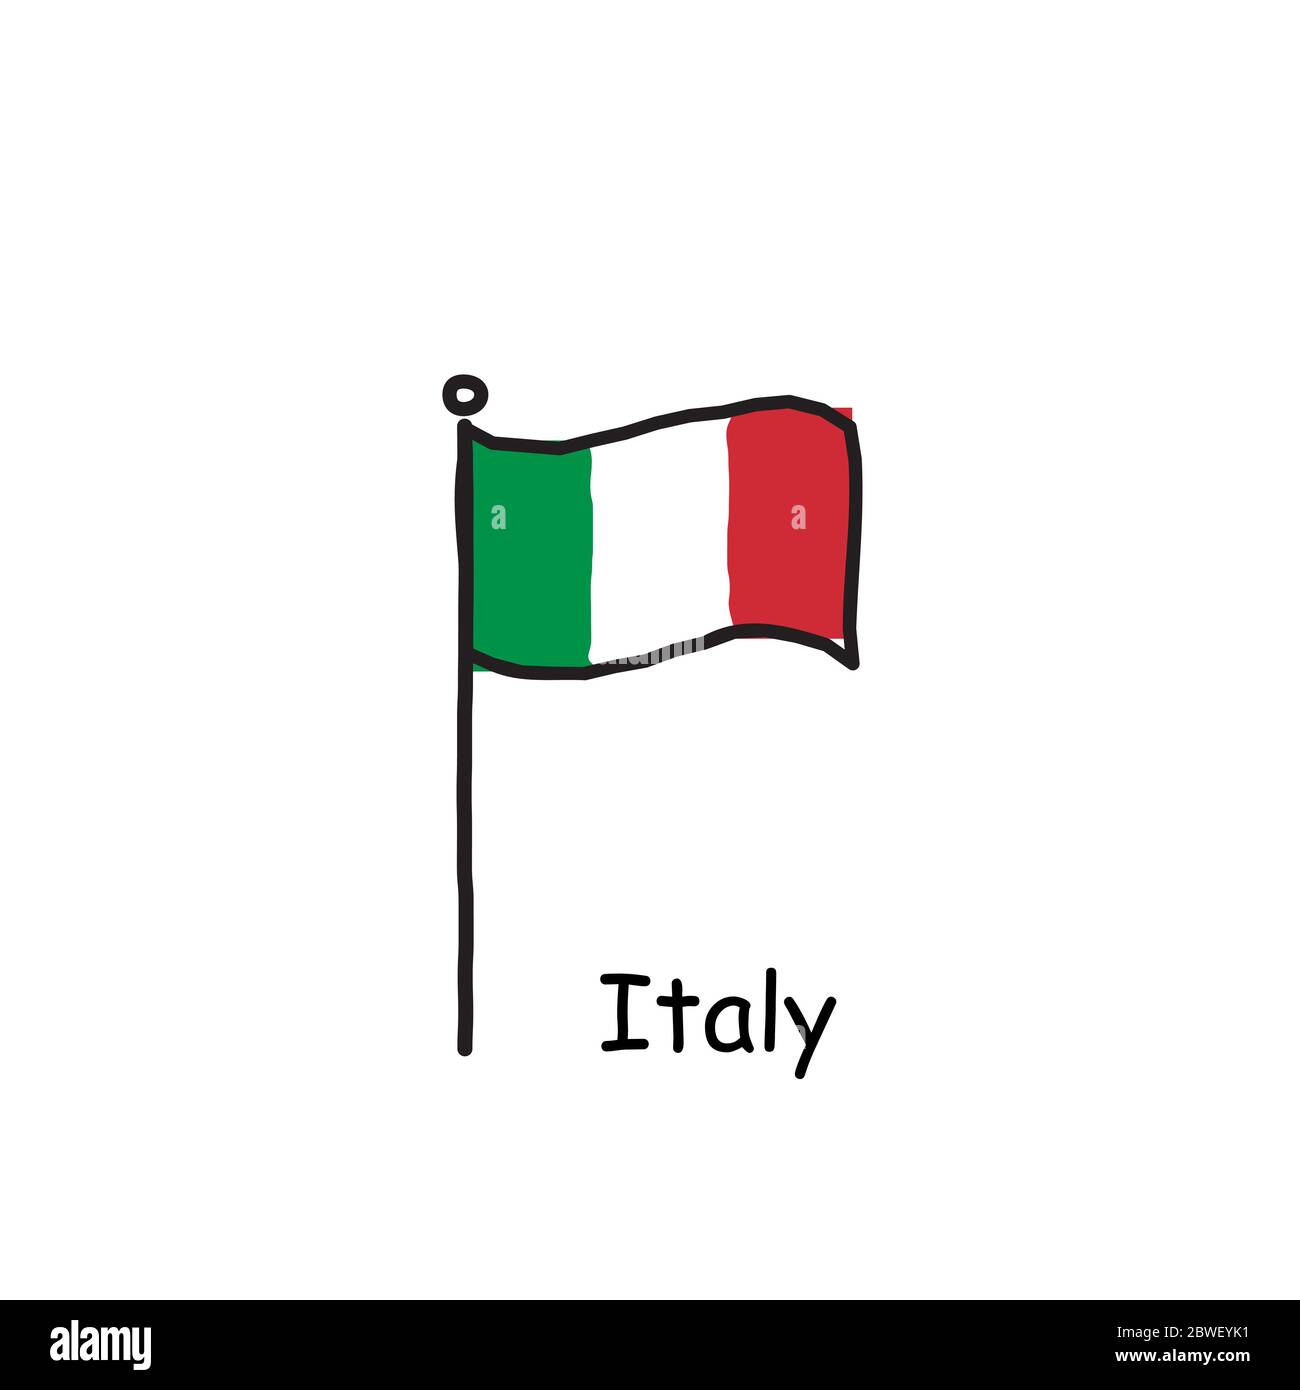 Flagge italien Ausgeschnittene Stockfotos und -bilder - Alamy